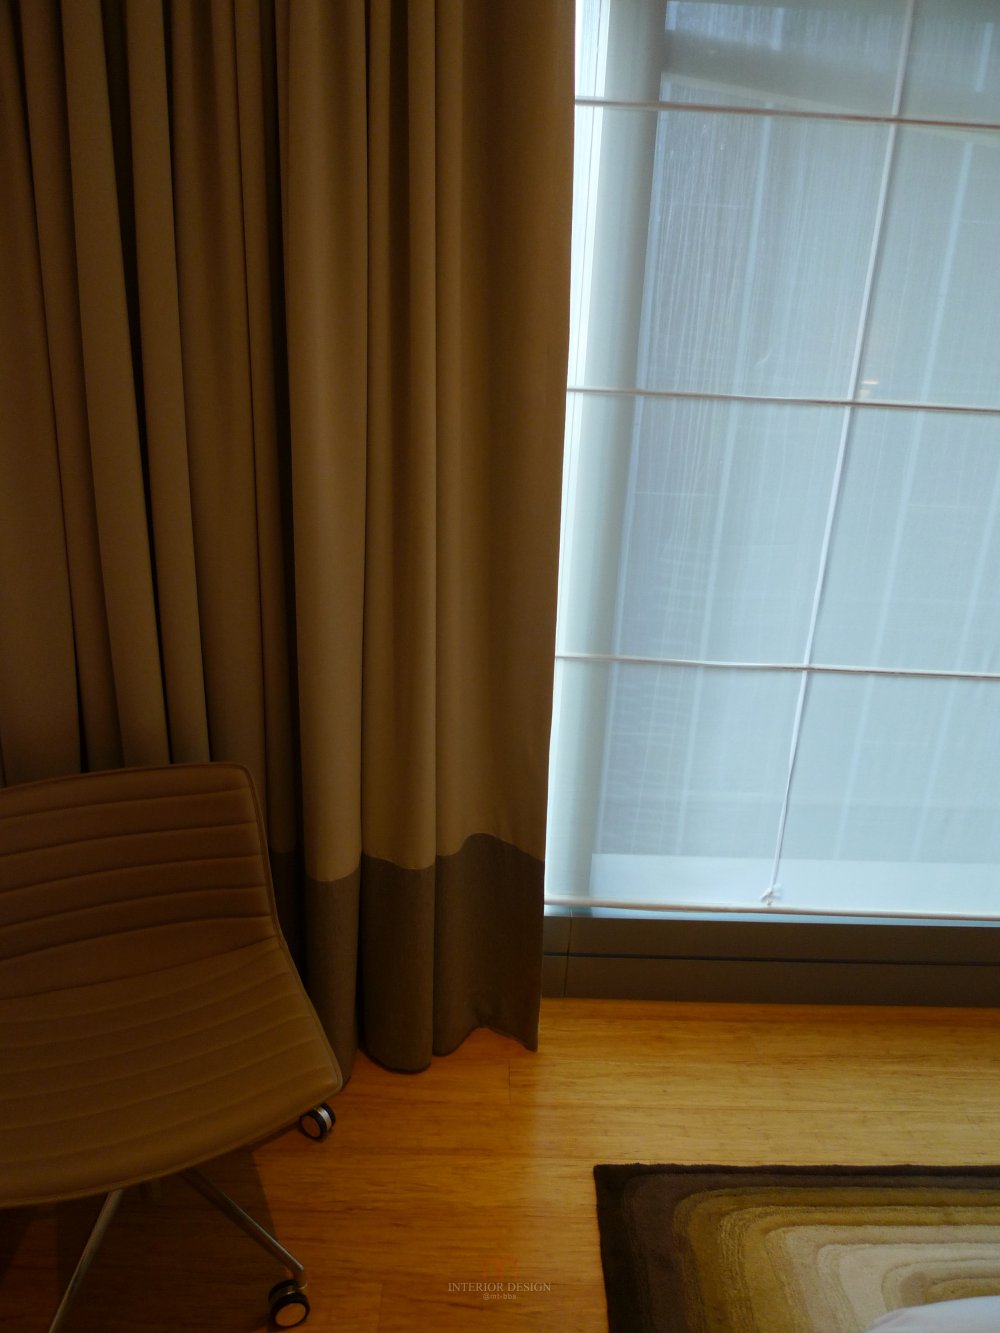 香港英迪格酒店自拍客房部分_P1020589.JPG